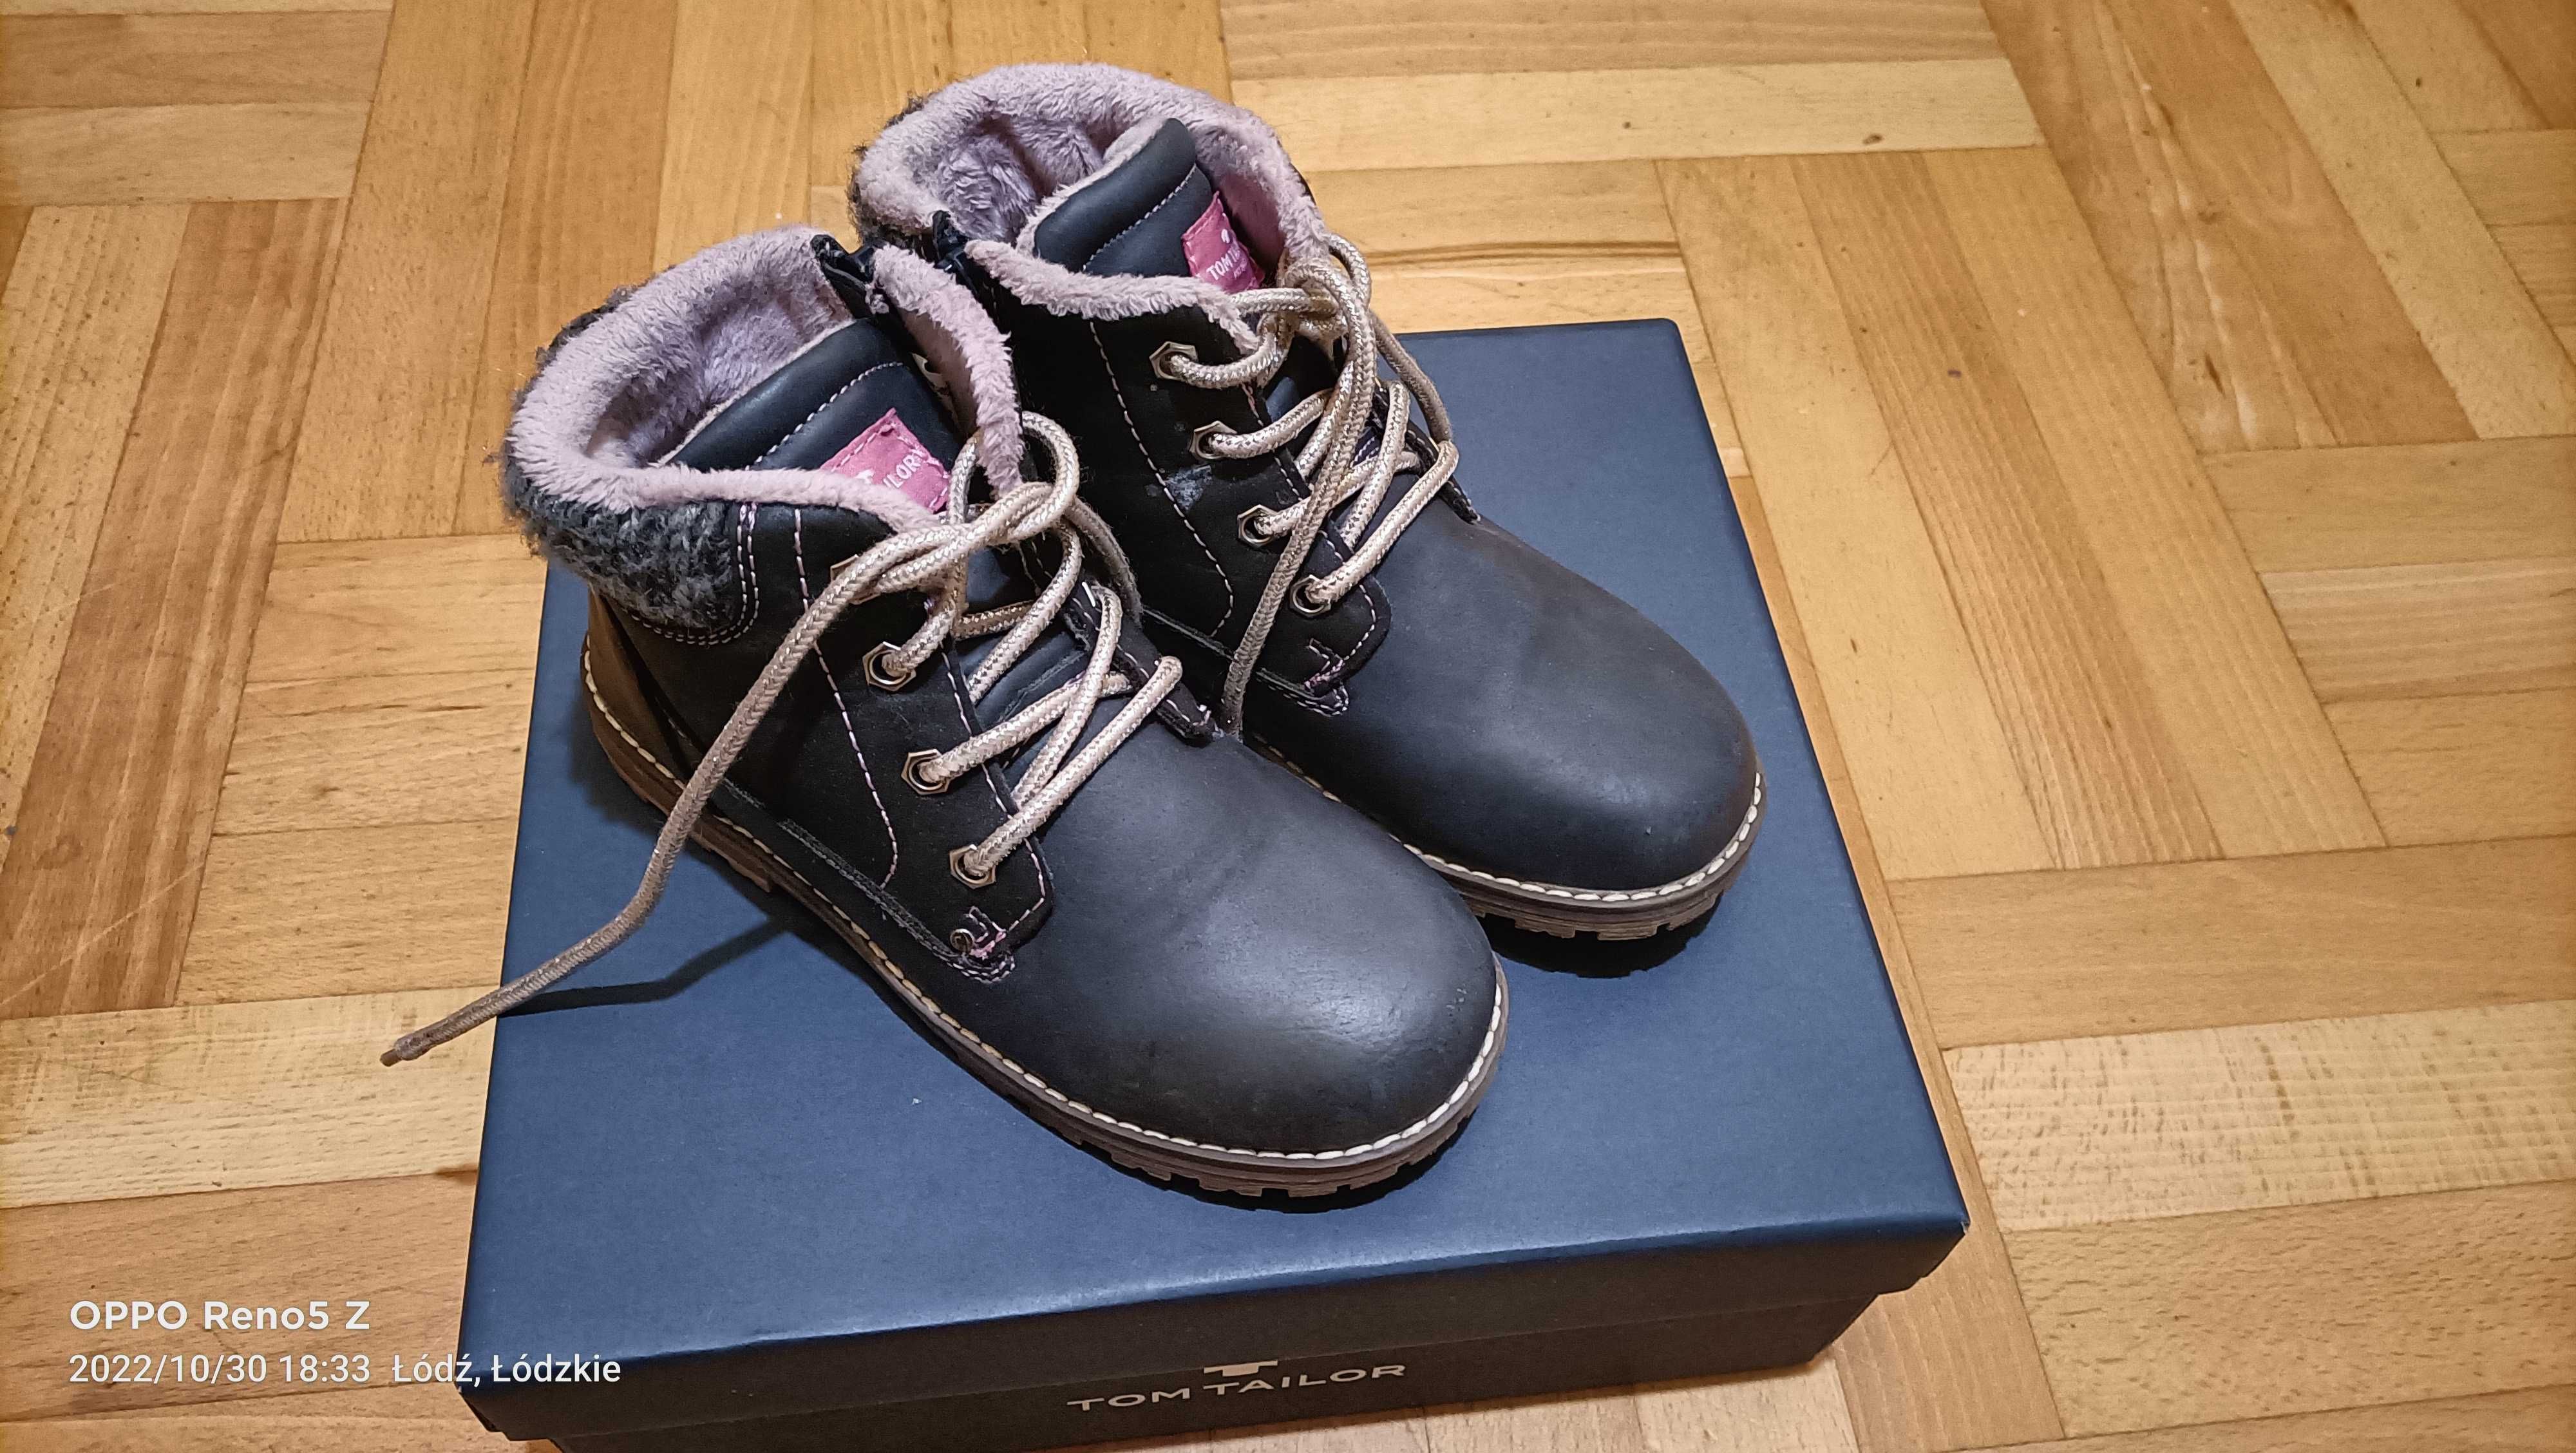 Zimowe buty, buciki skórzane ocieplane jak nowe Tom Tailor w roz. 31